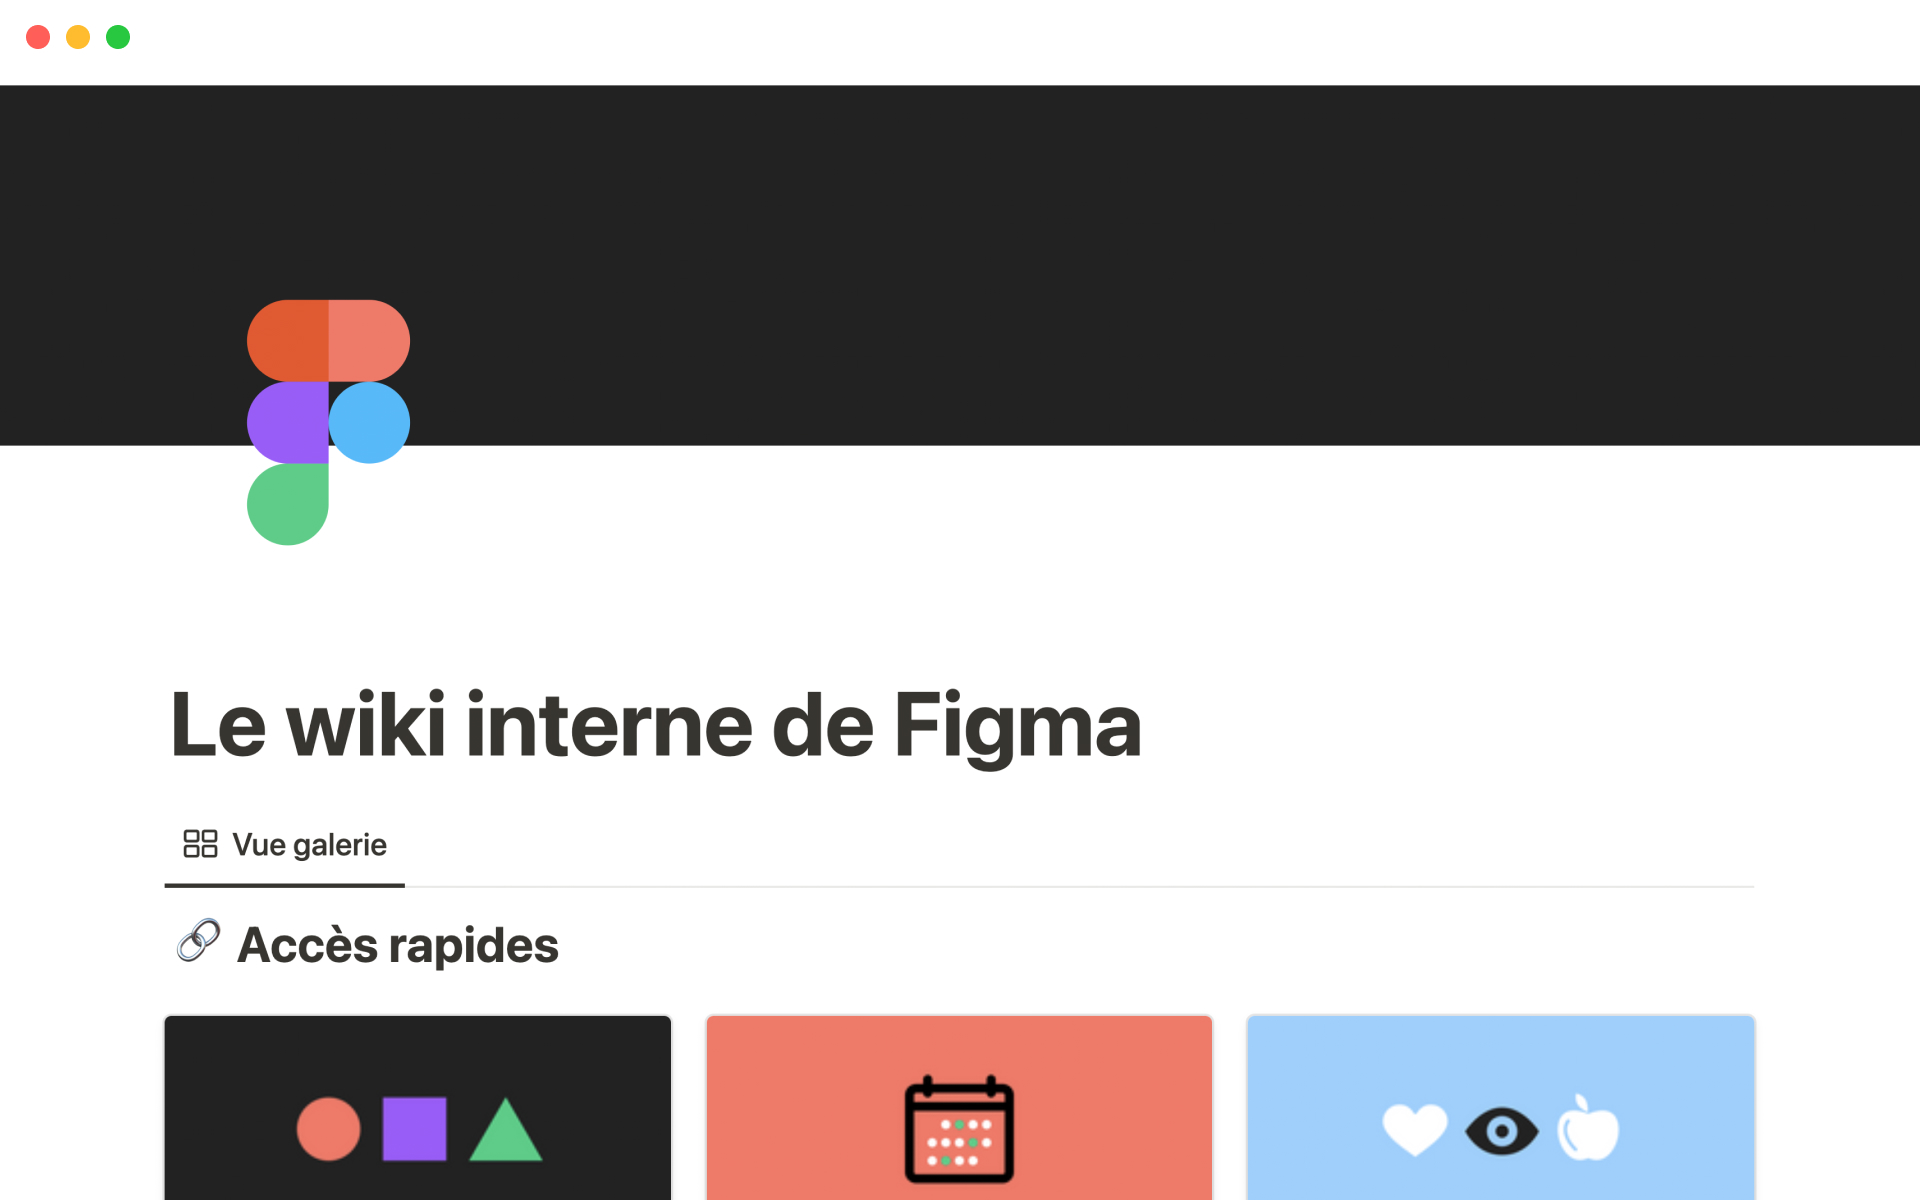 Le wiki interne de Figma est la source de référence pour toutes les informations et politiques internes de l’entreprise.